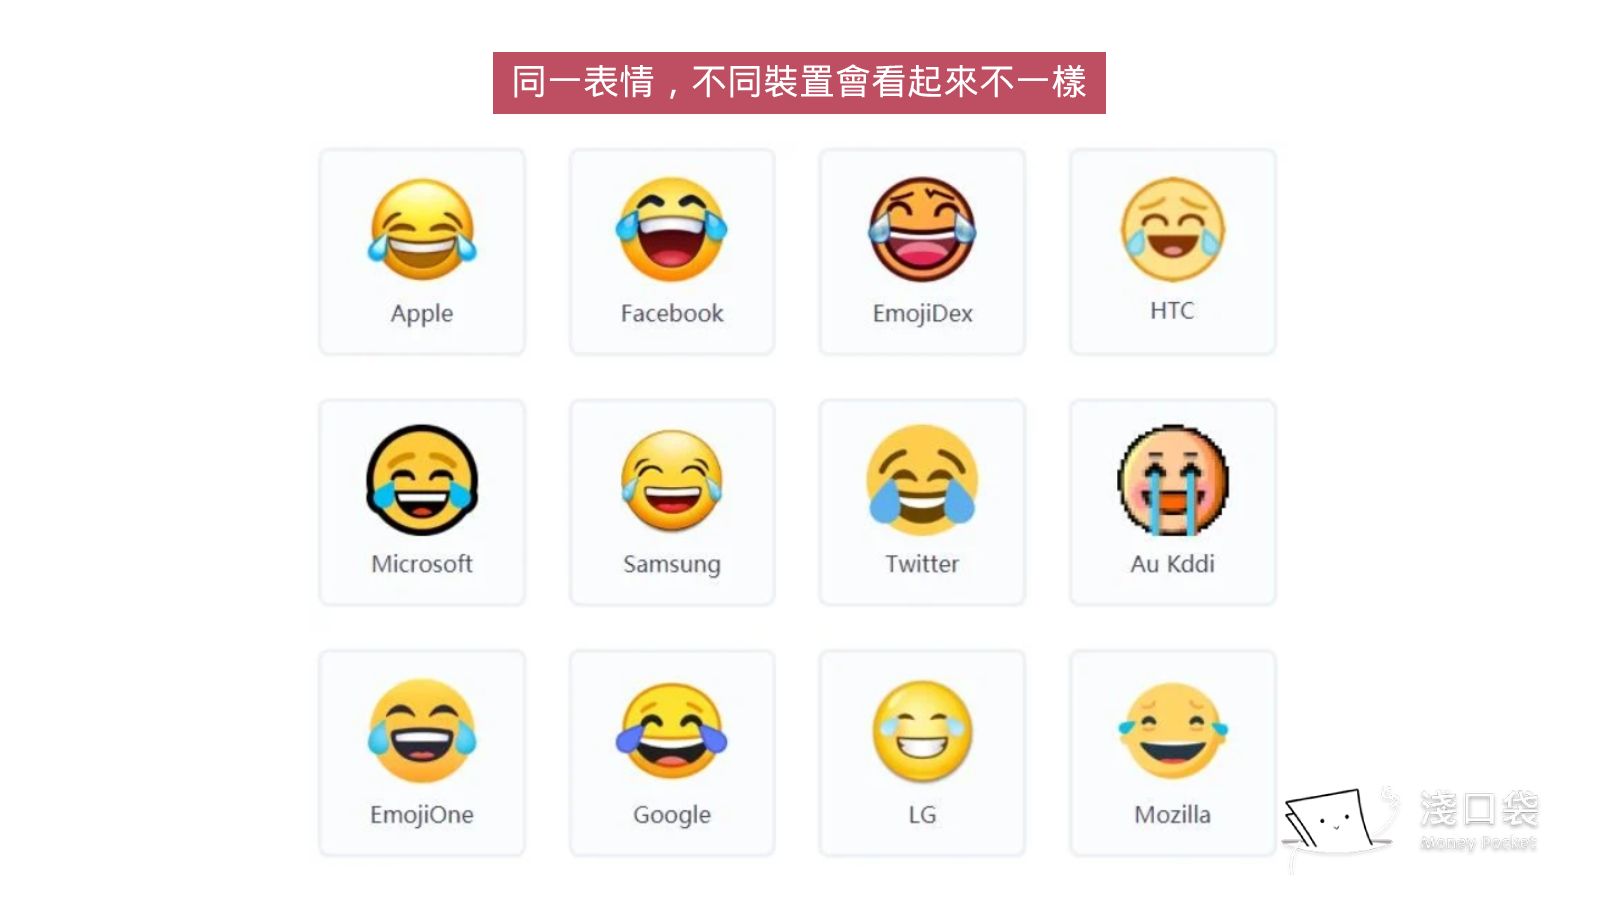 emoji在不同裝置的表情版本會不一樣